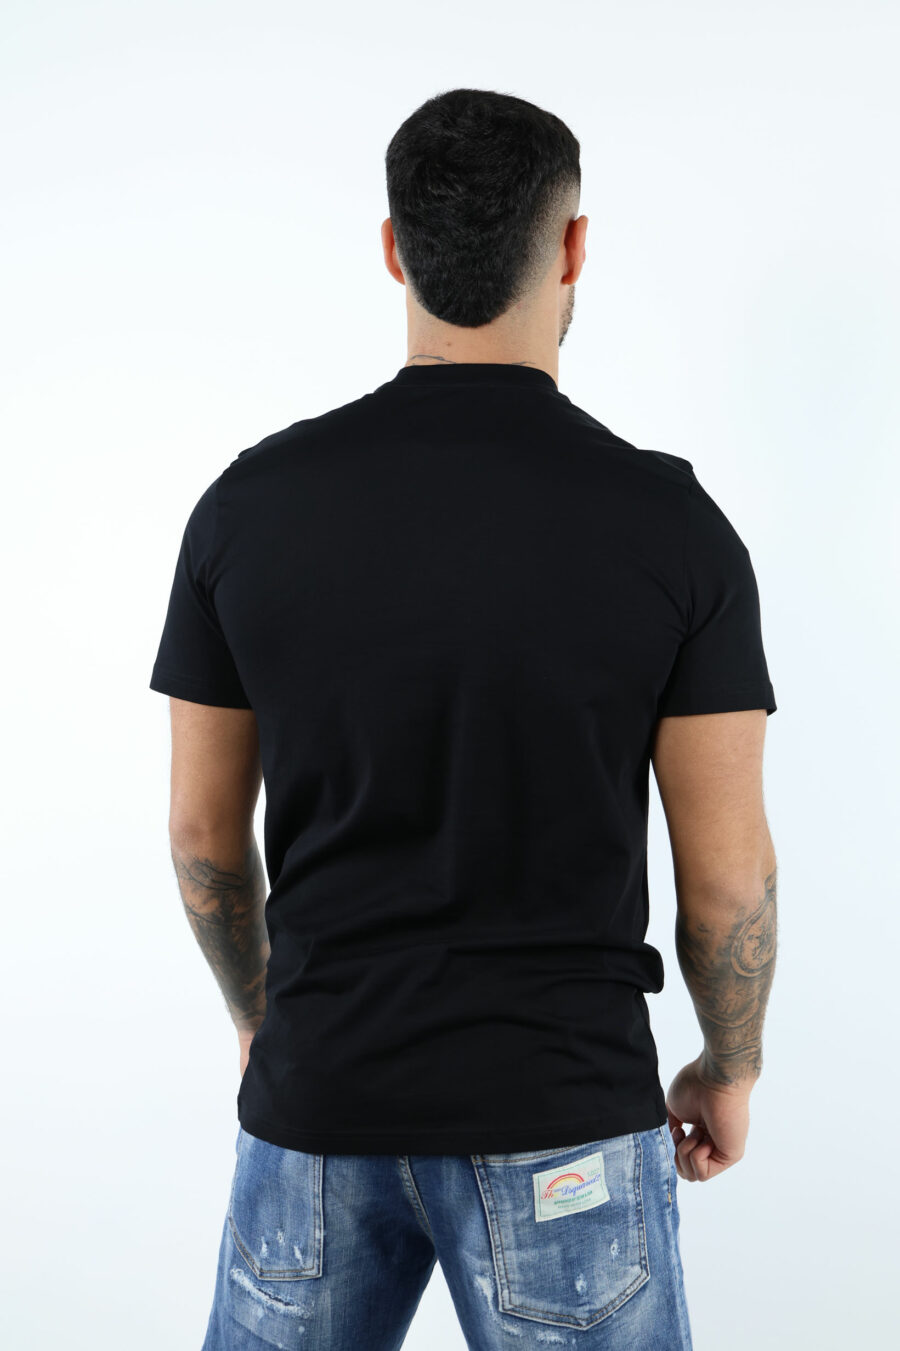 Camiseta negra "oversize" de algodón orgánico con maxilogo negro clásico - 106957